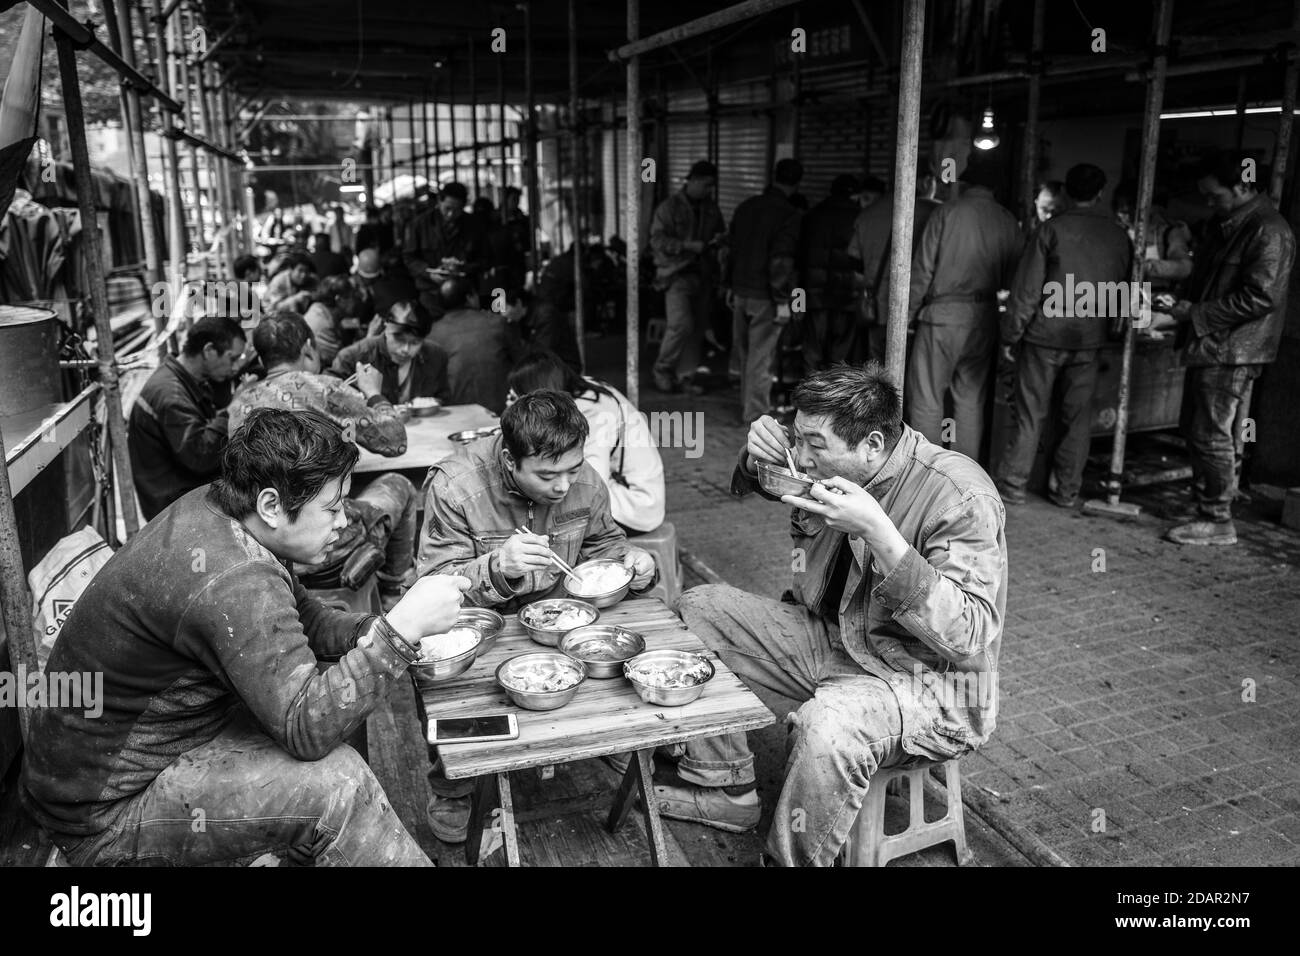 Employé qui a déjeuné dans une impasse dans un marché du centre de Chongqing, à partir de son salaire, il ne peut acheter que les morceaux de viande bon marché, Chongqing, Chine Banque D'Images